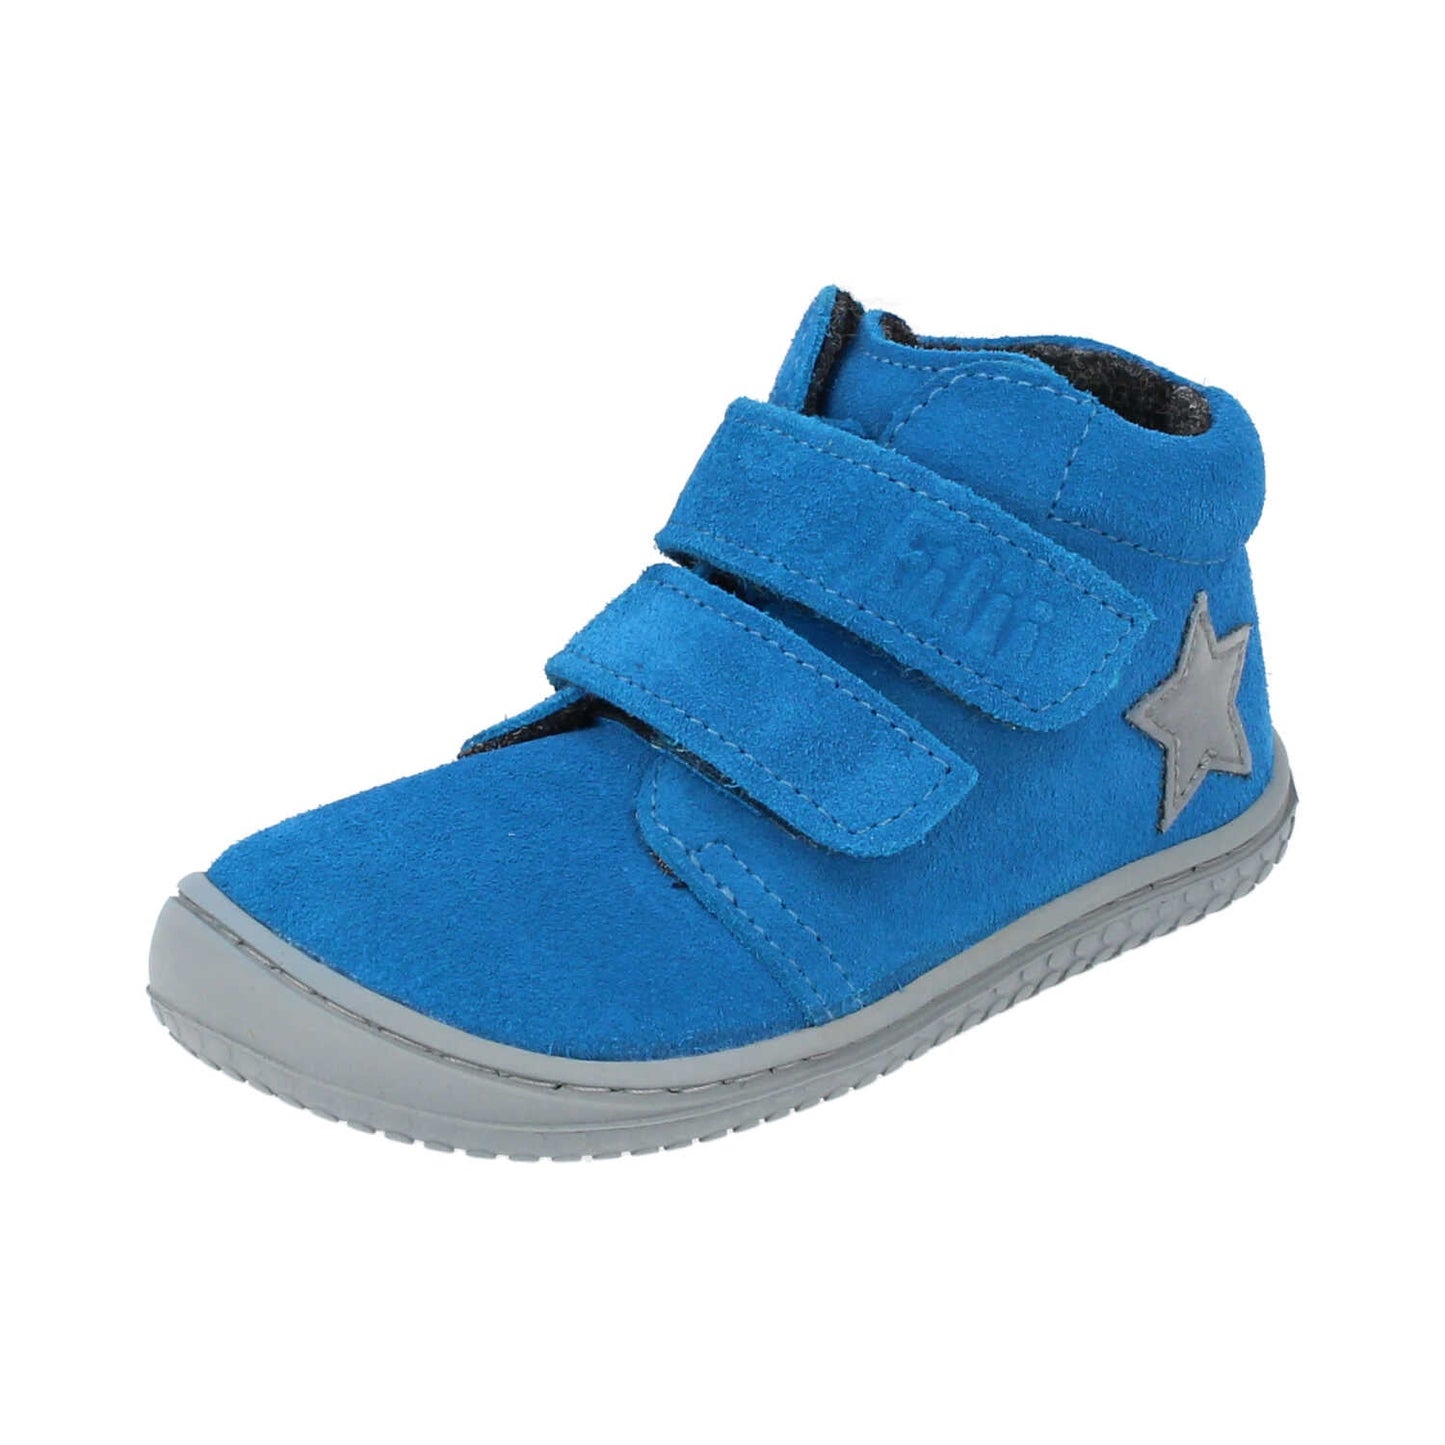 Filii Chameleon "Medium" barfods støvle til børn i farven electric blue fleece, vinklet